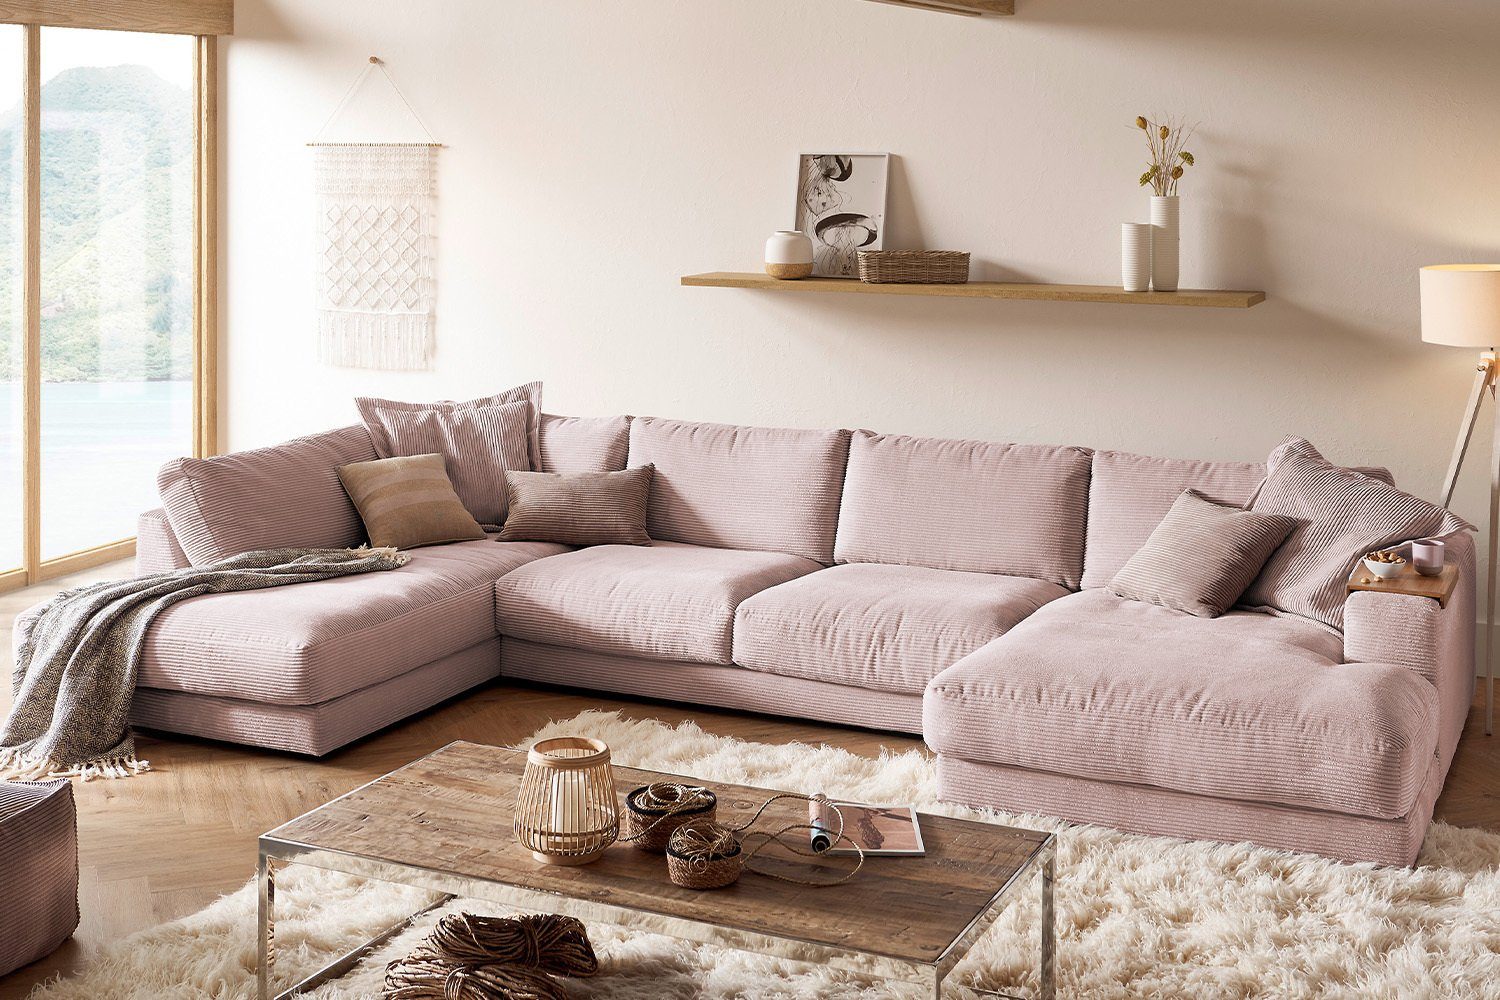 KAWOLA Sofa od. versch. rosa Longchair Wohnlandschaft Farben MADELINE, rechts links, Cord, U-Form